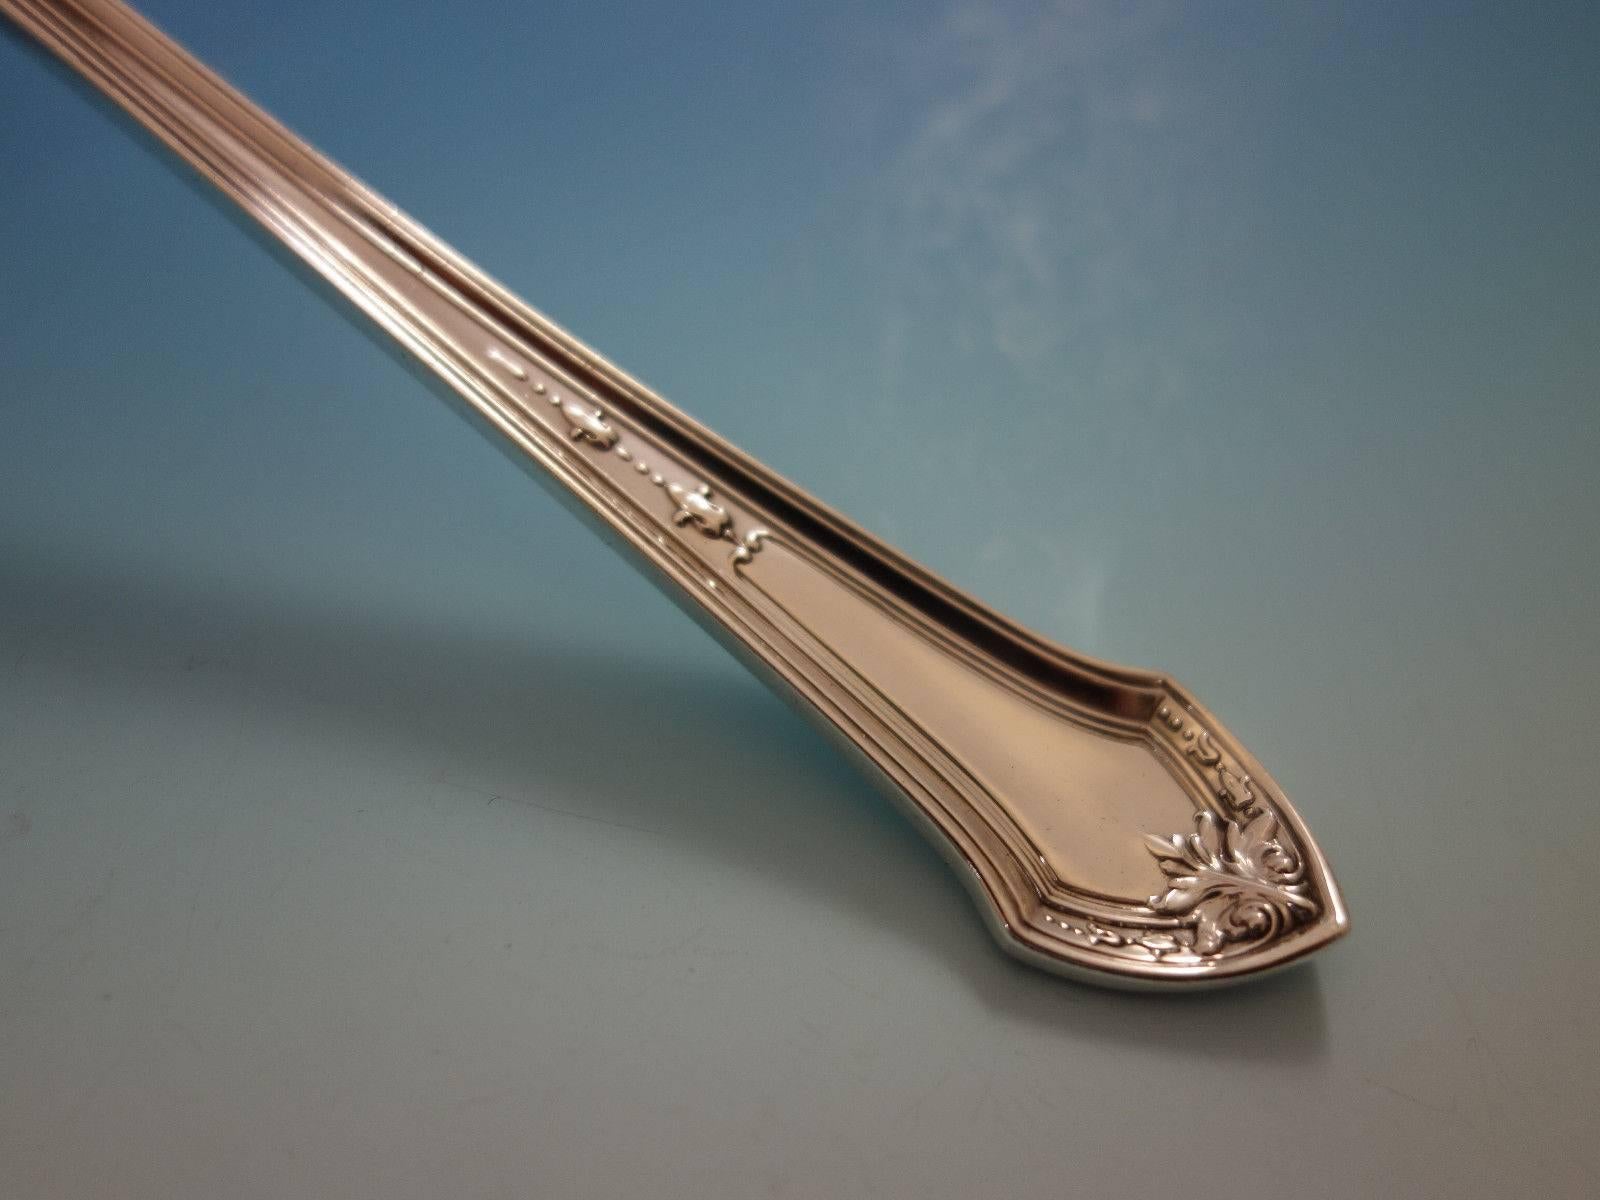 lenox sterling silver flatware